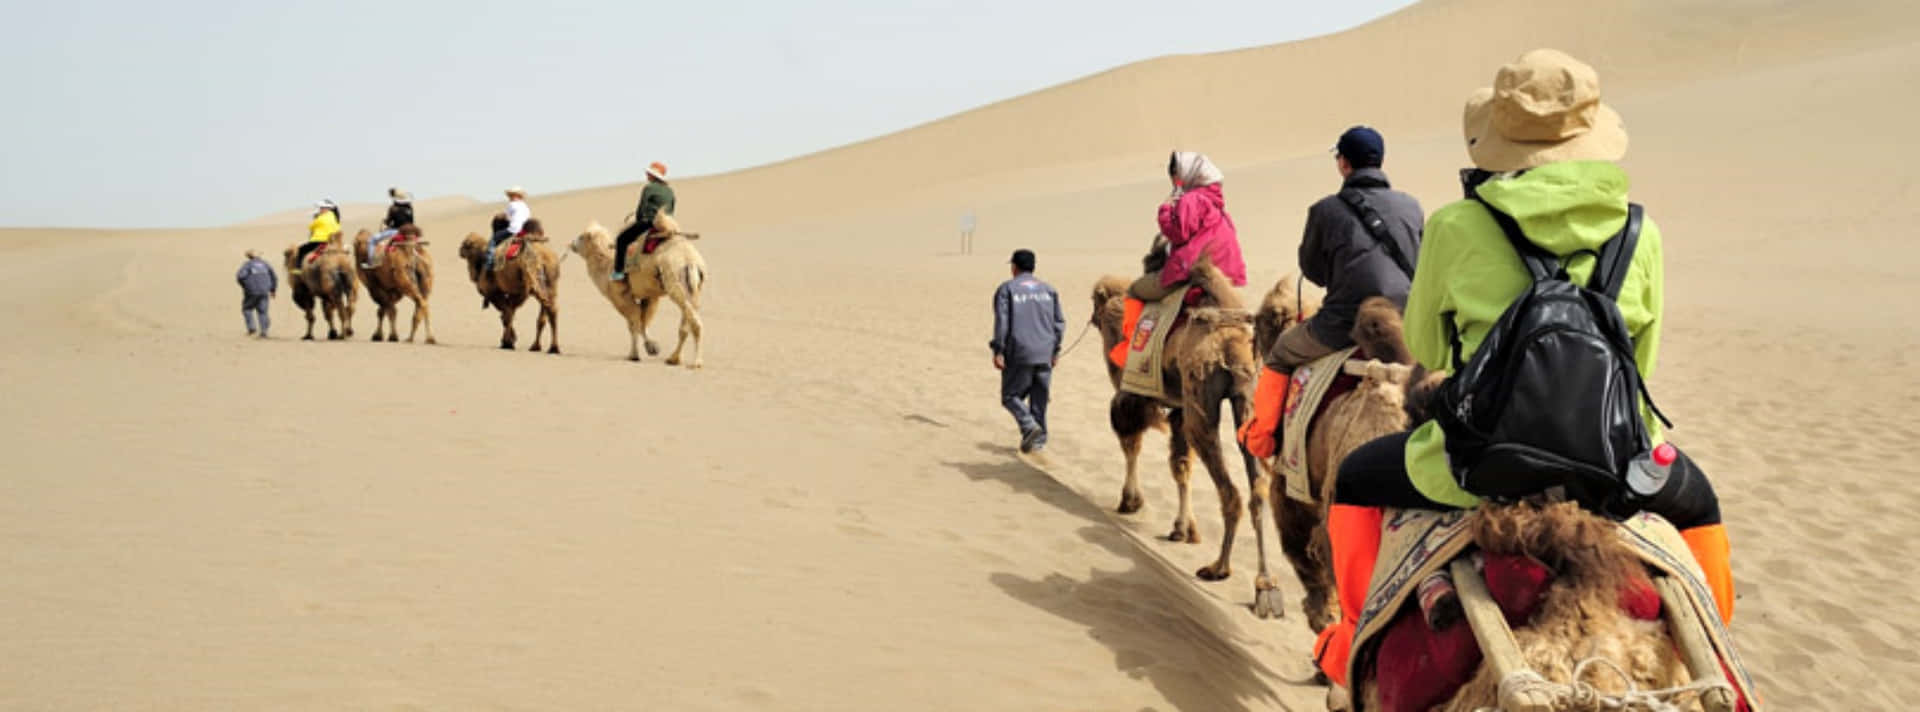 Einegruppe Von Menschen, Die Auf Kamelen Durch Die Wüste Reiten.